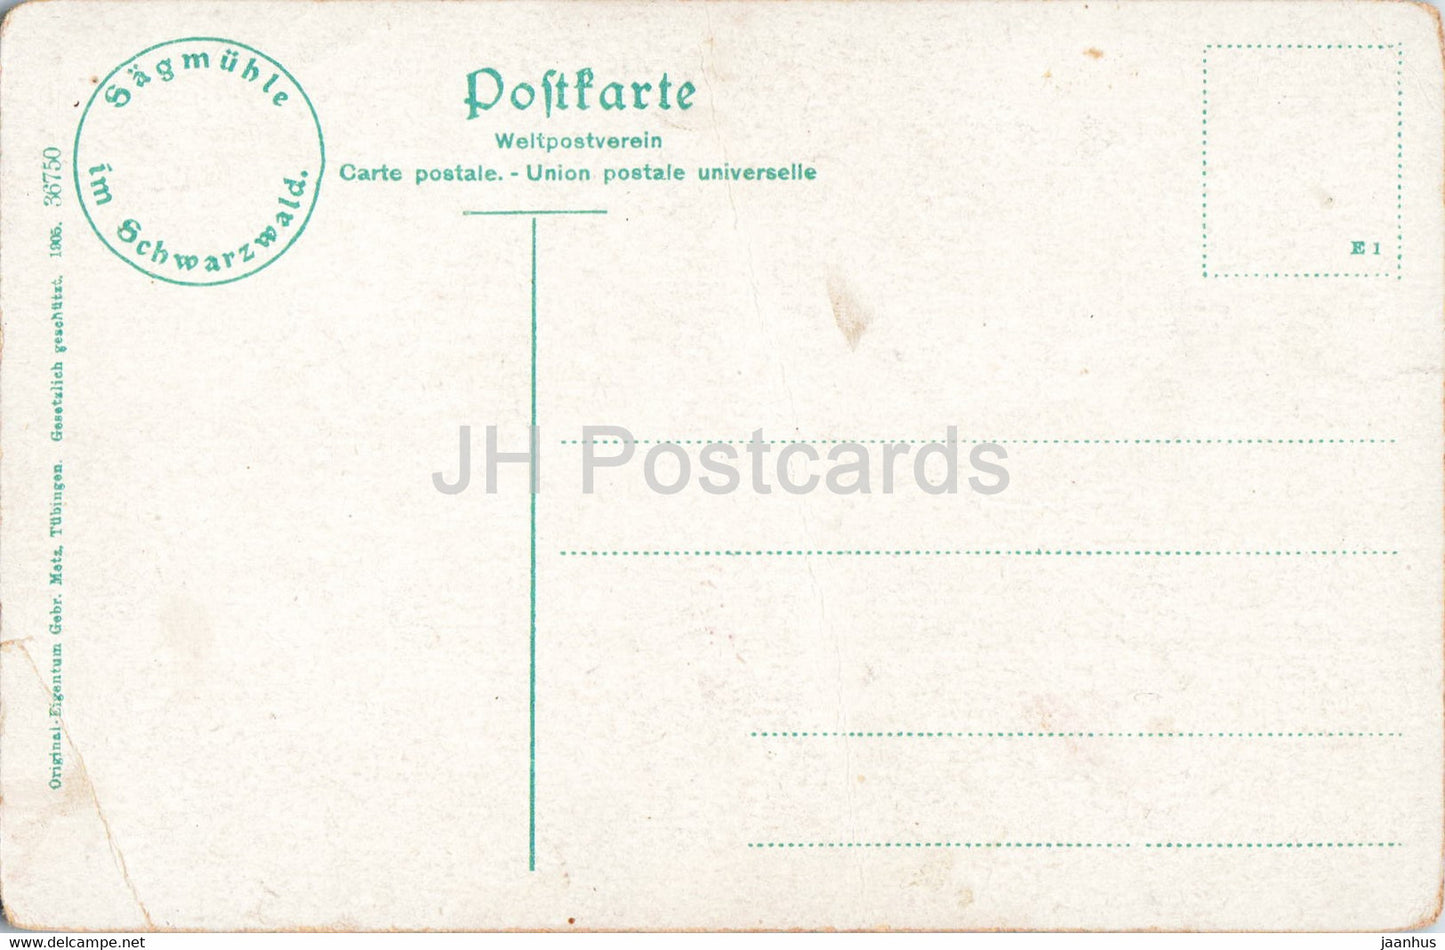 Sagmühle im Schwarzwald - 36750 - alte Postkarte - Deutschland - unbenutzt